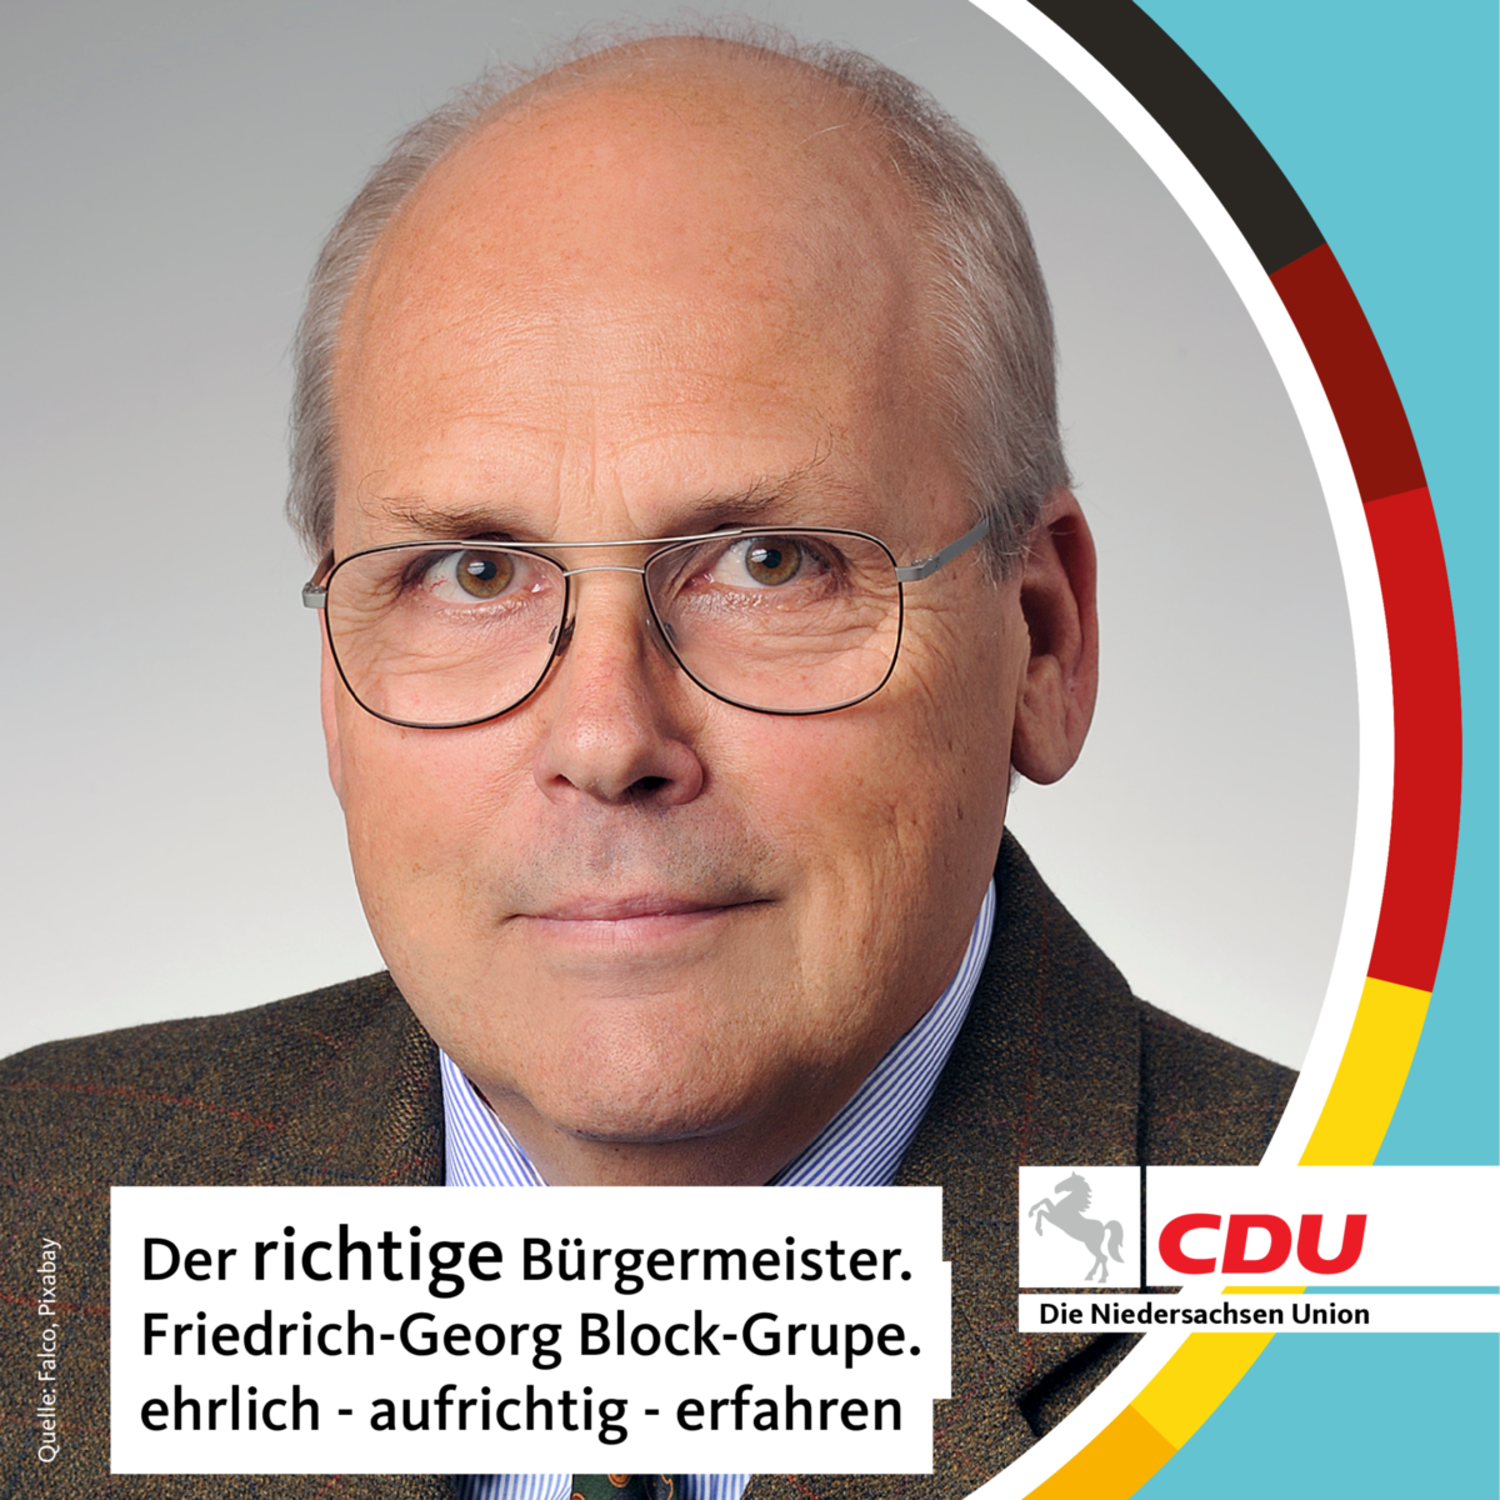 Friedrich-Georg Block-Grupe ist der Kandidat der CDU Gronau (Leine).